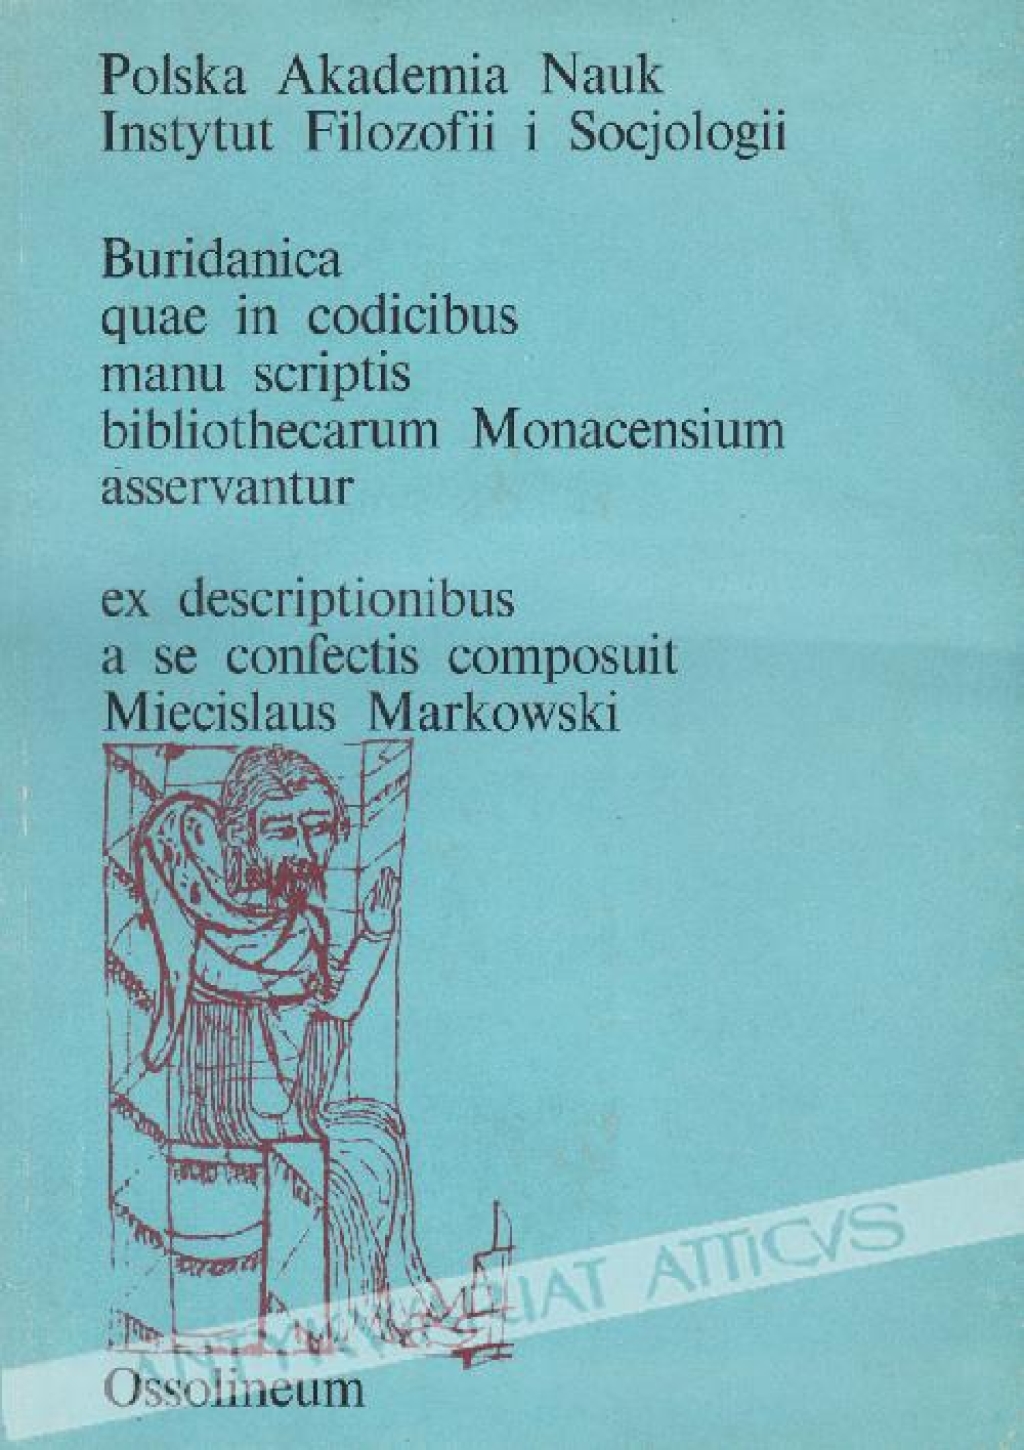 Buridania quae in codicibus manu scriptis bibliothecarum Monacensium asservantur